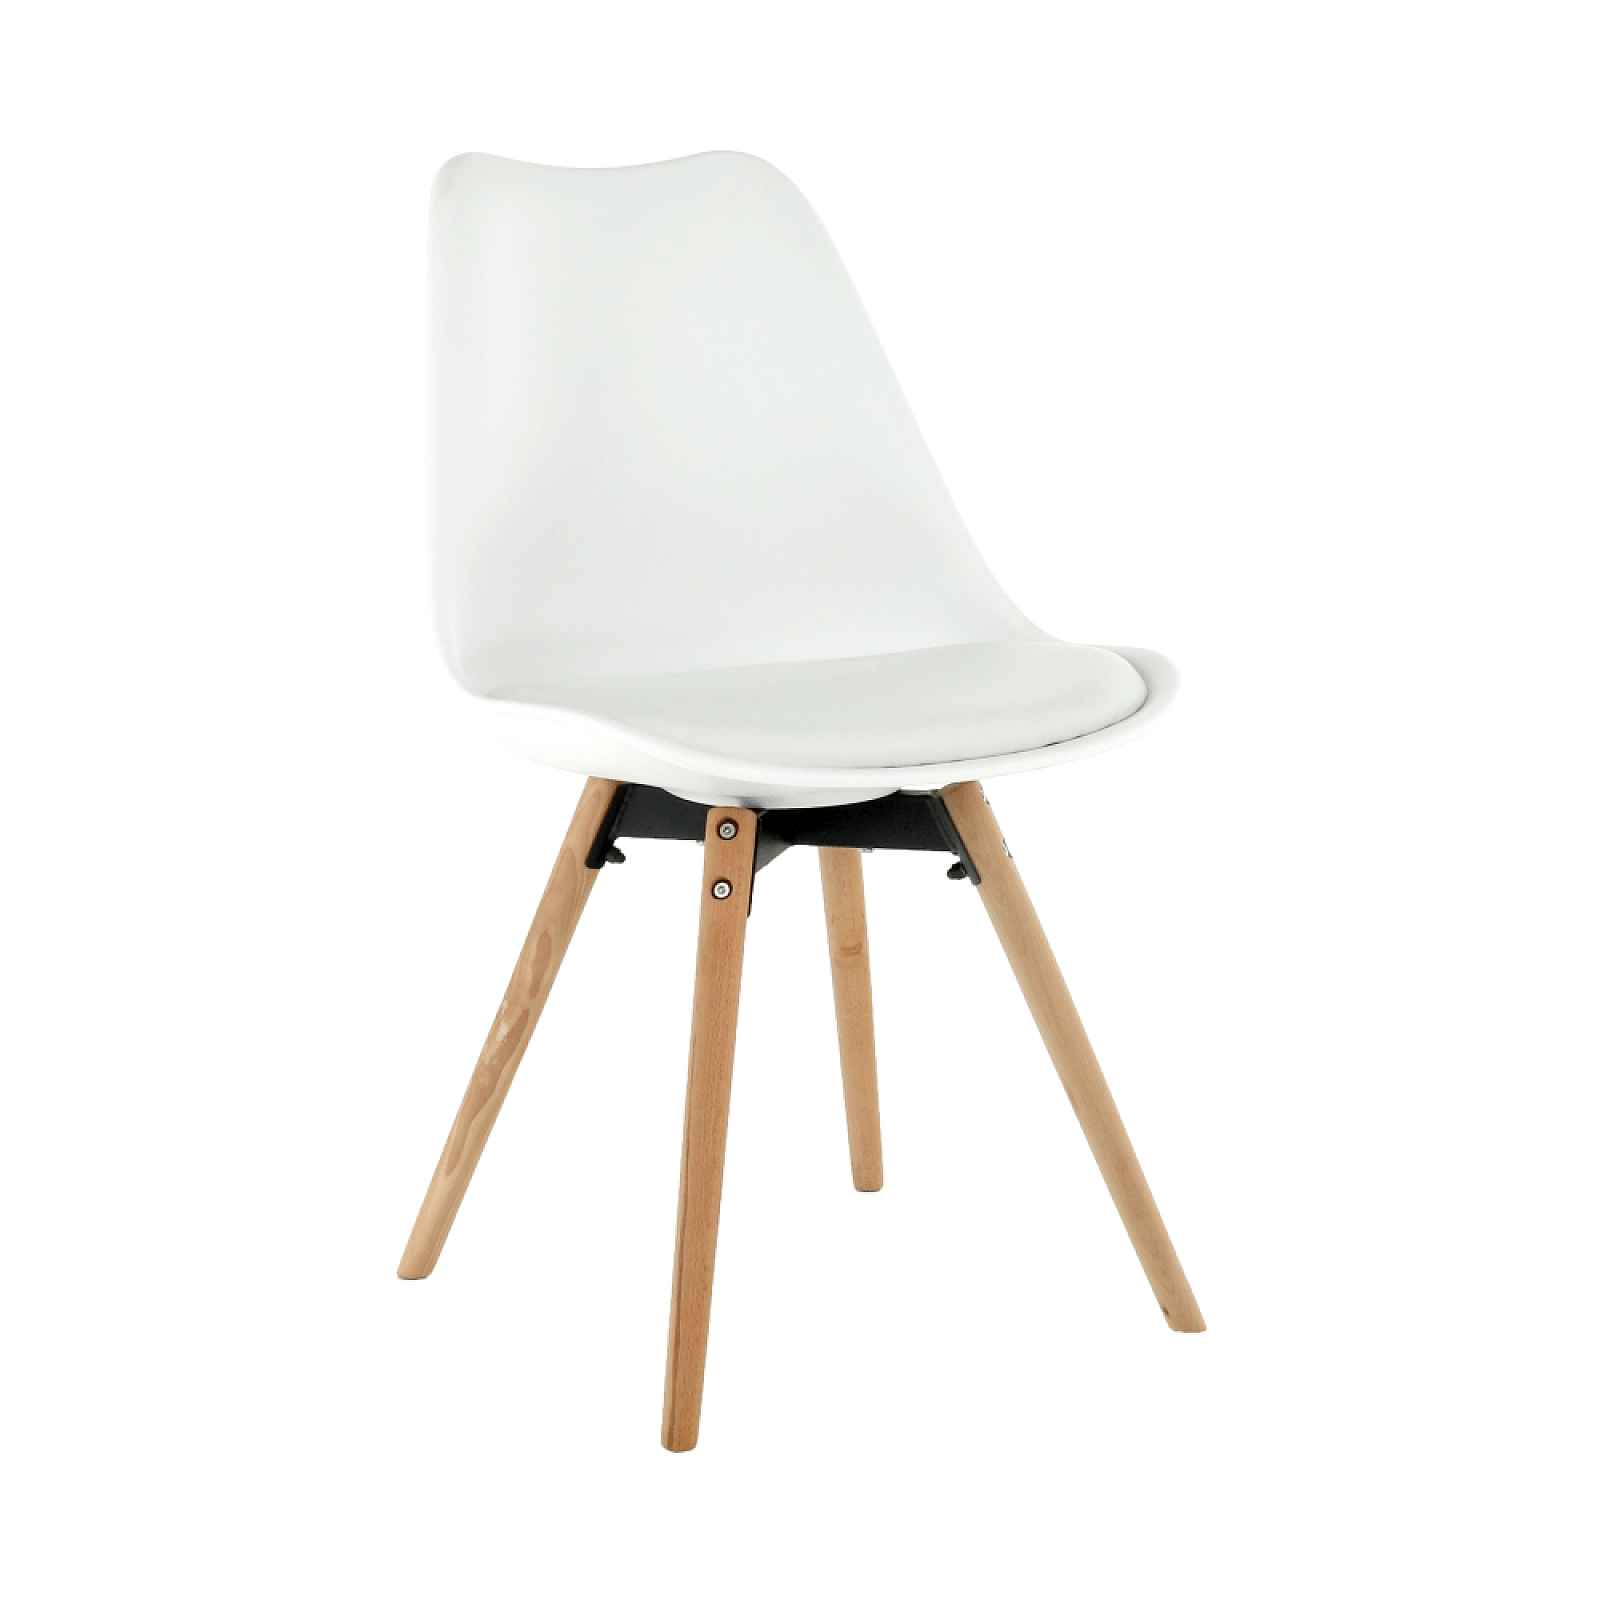 Jídelní židle SEMER NEW dřevo, buk / plast / ekokůže Bílá